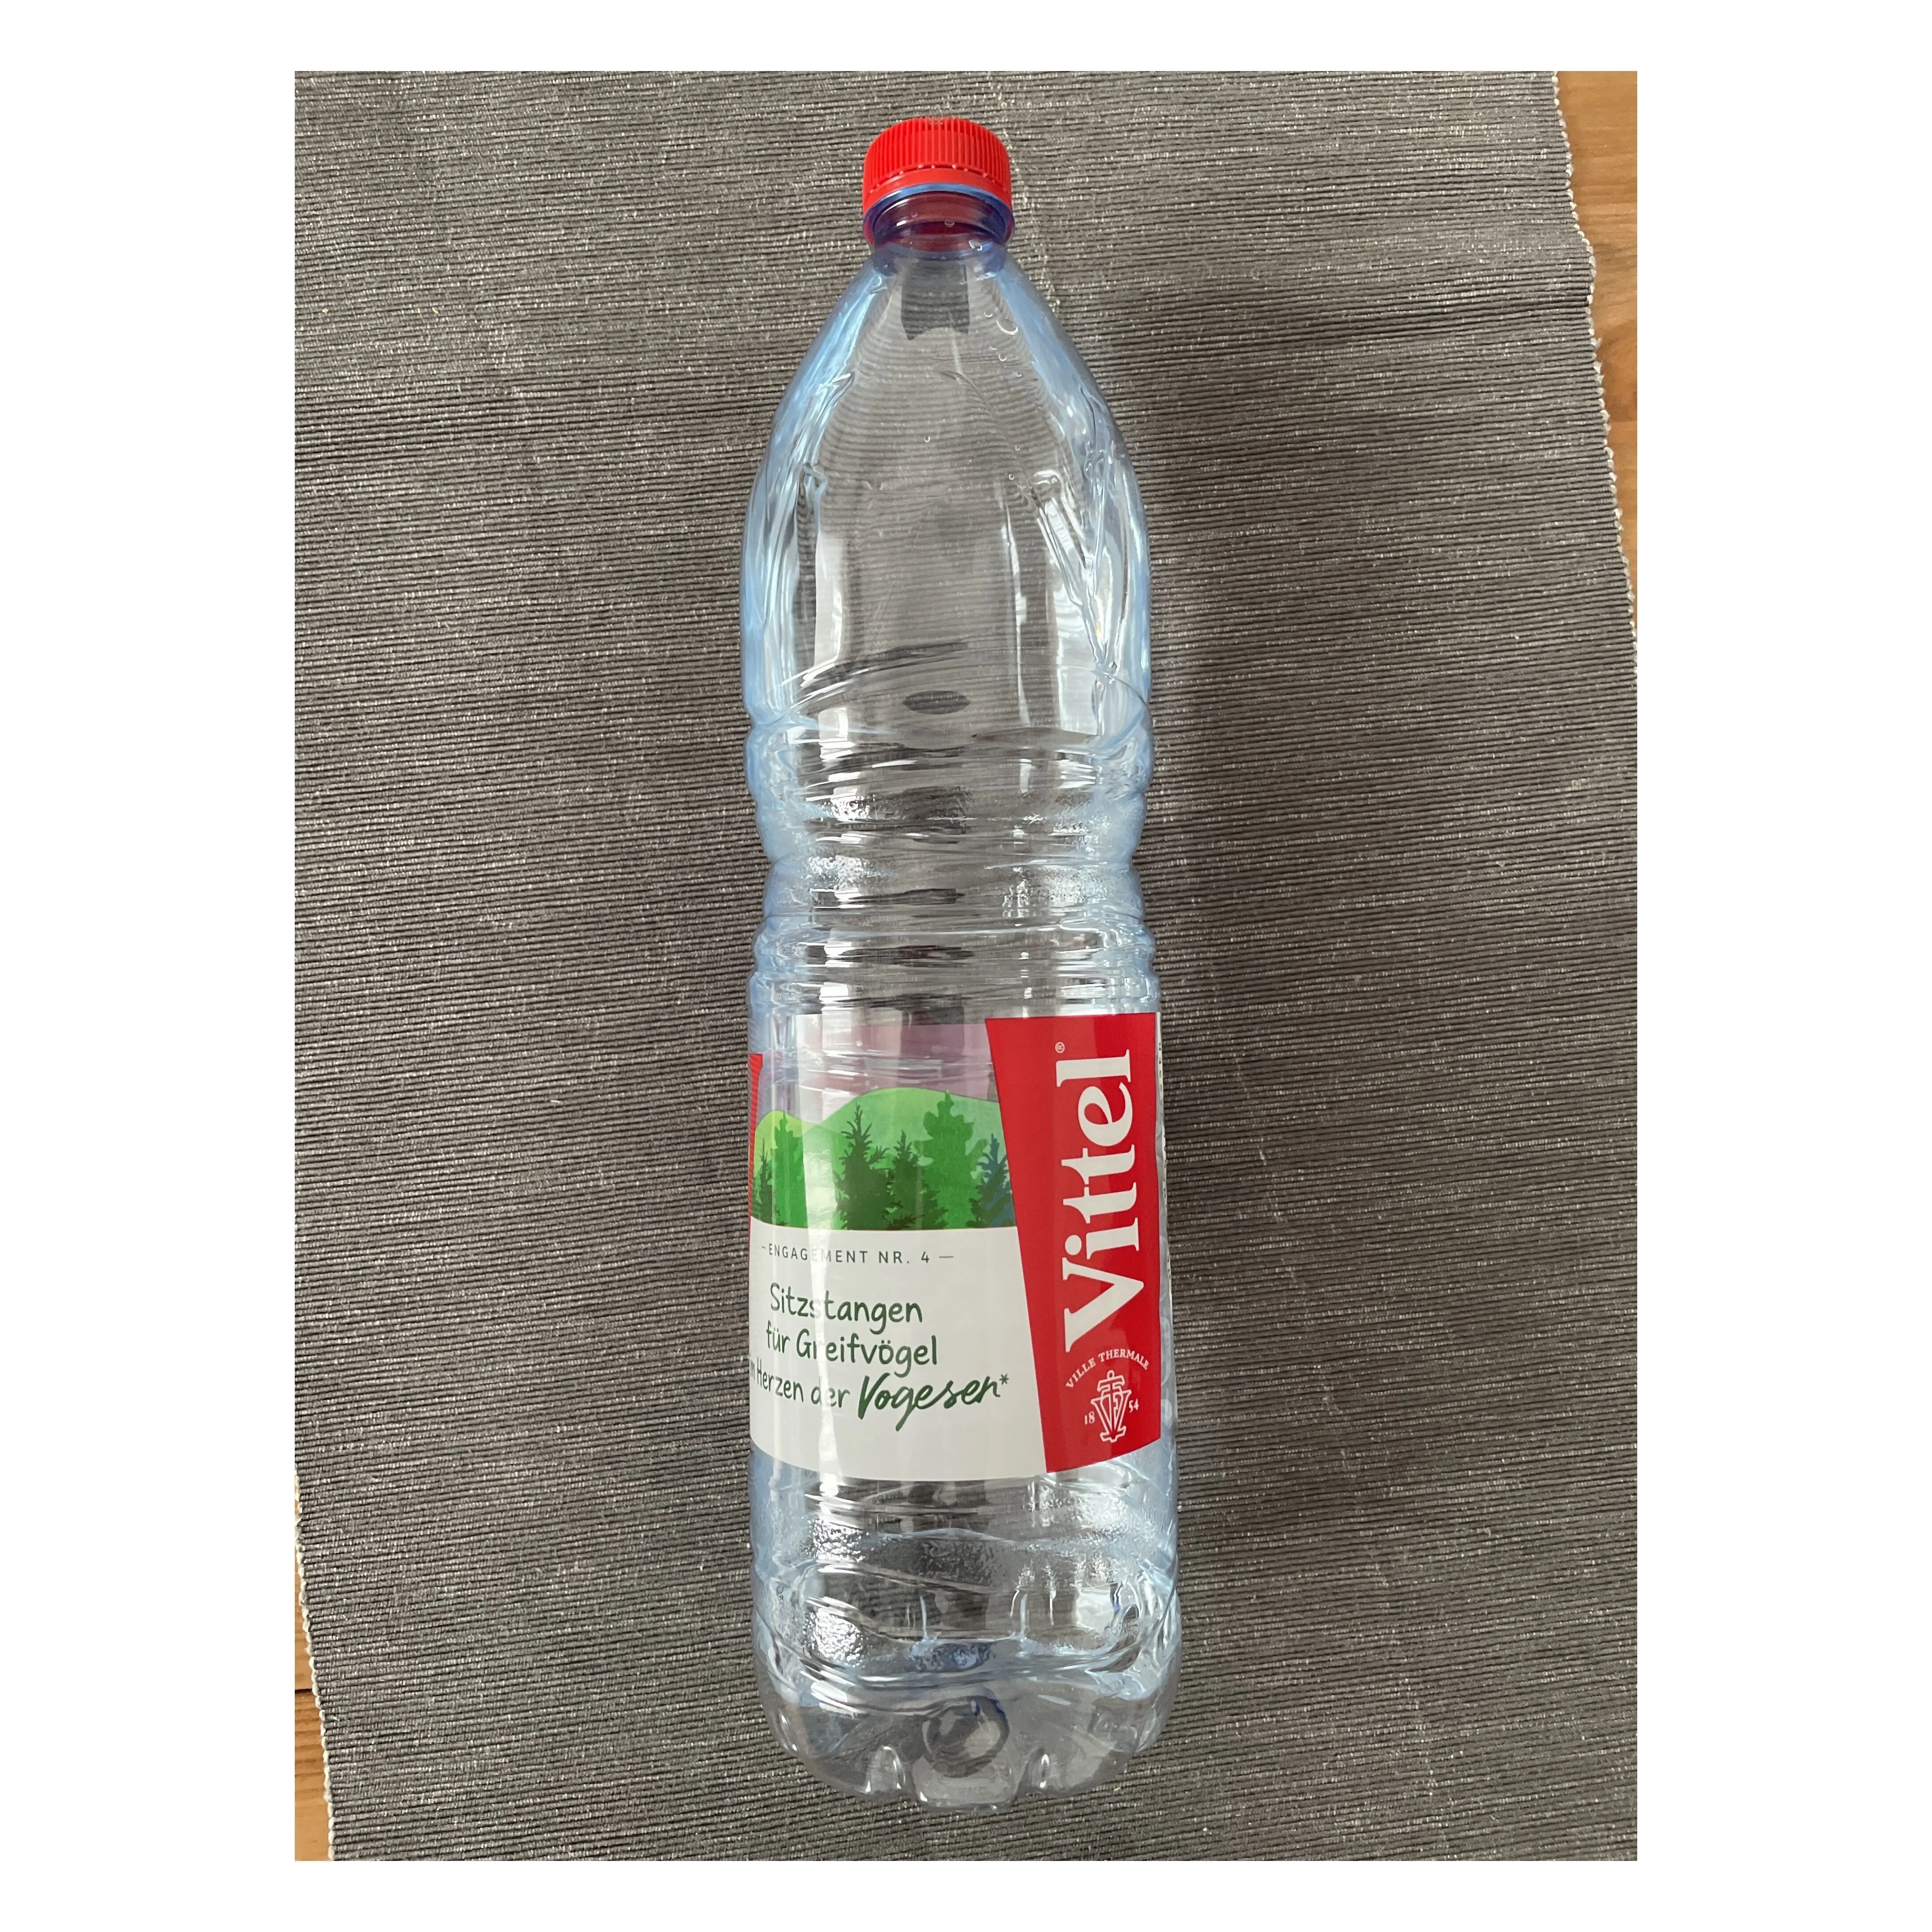 Vitt-el-натуральная минеральная вода-6x50 мл-упаковка по 2 шт.